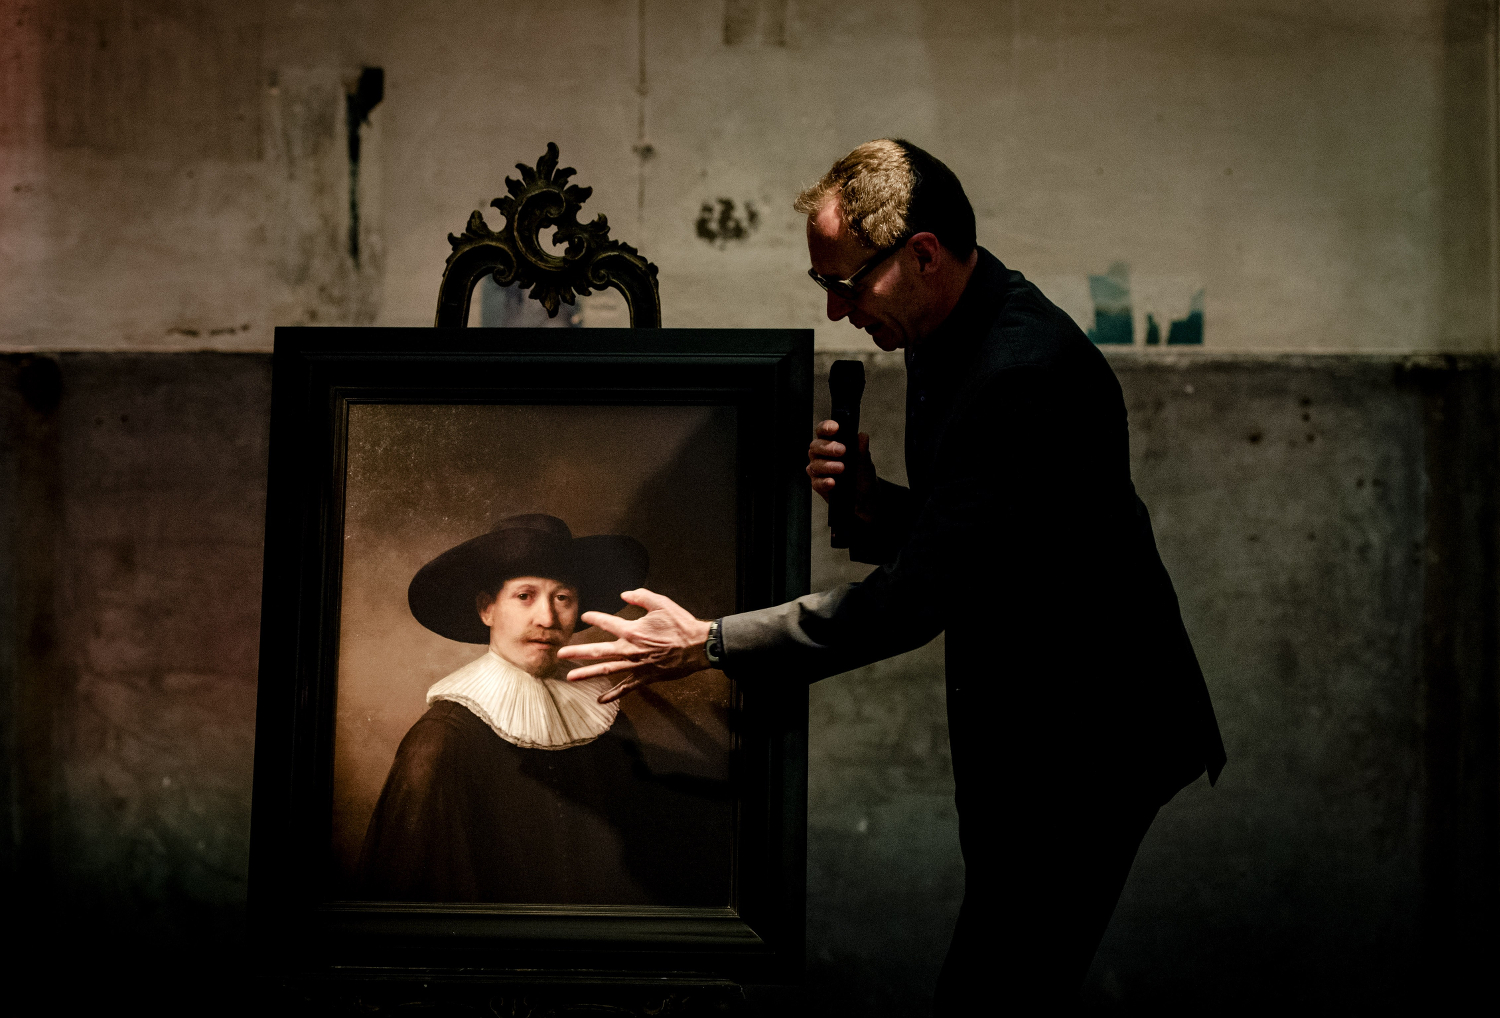 Crean un Rembrandt post mortem